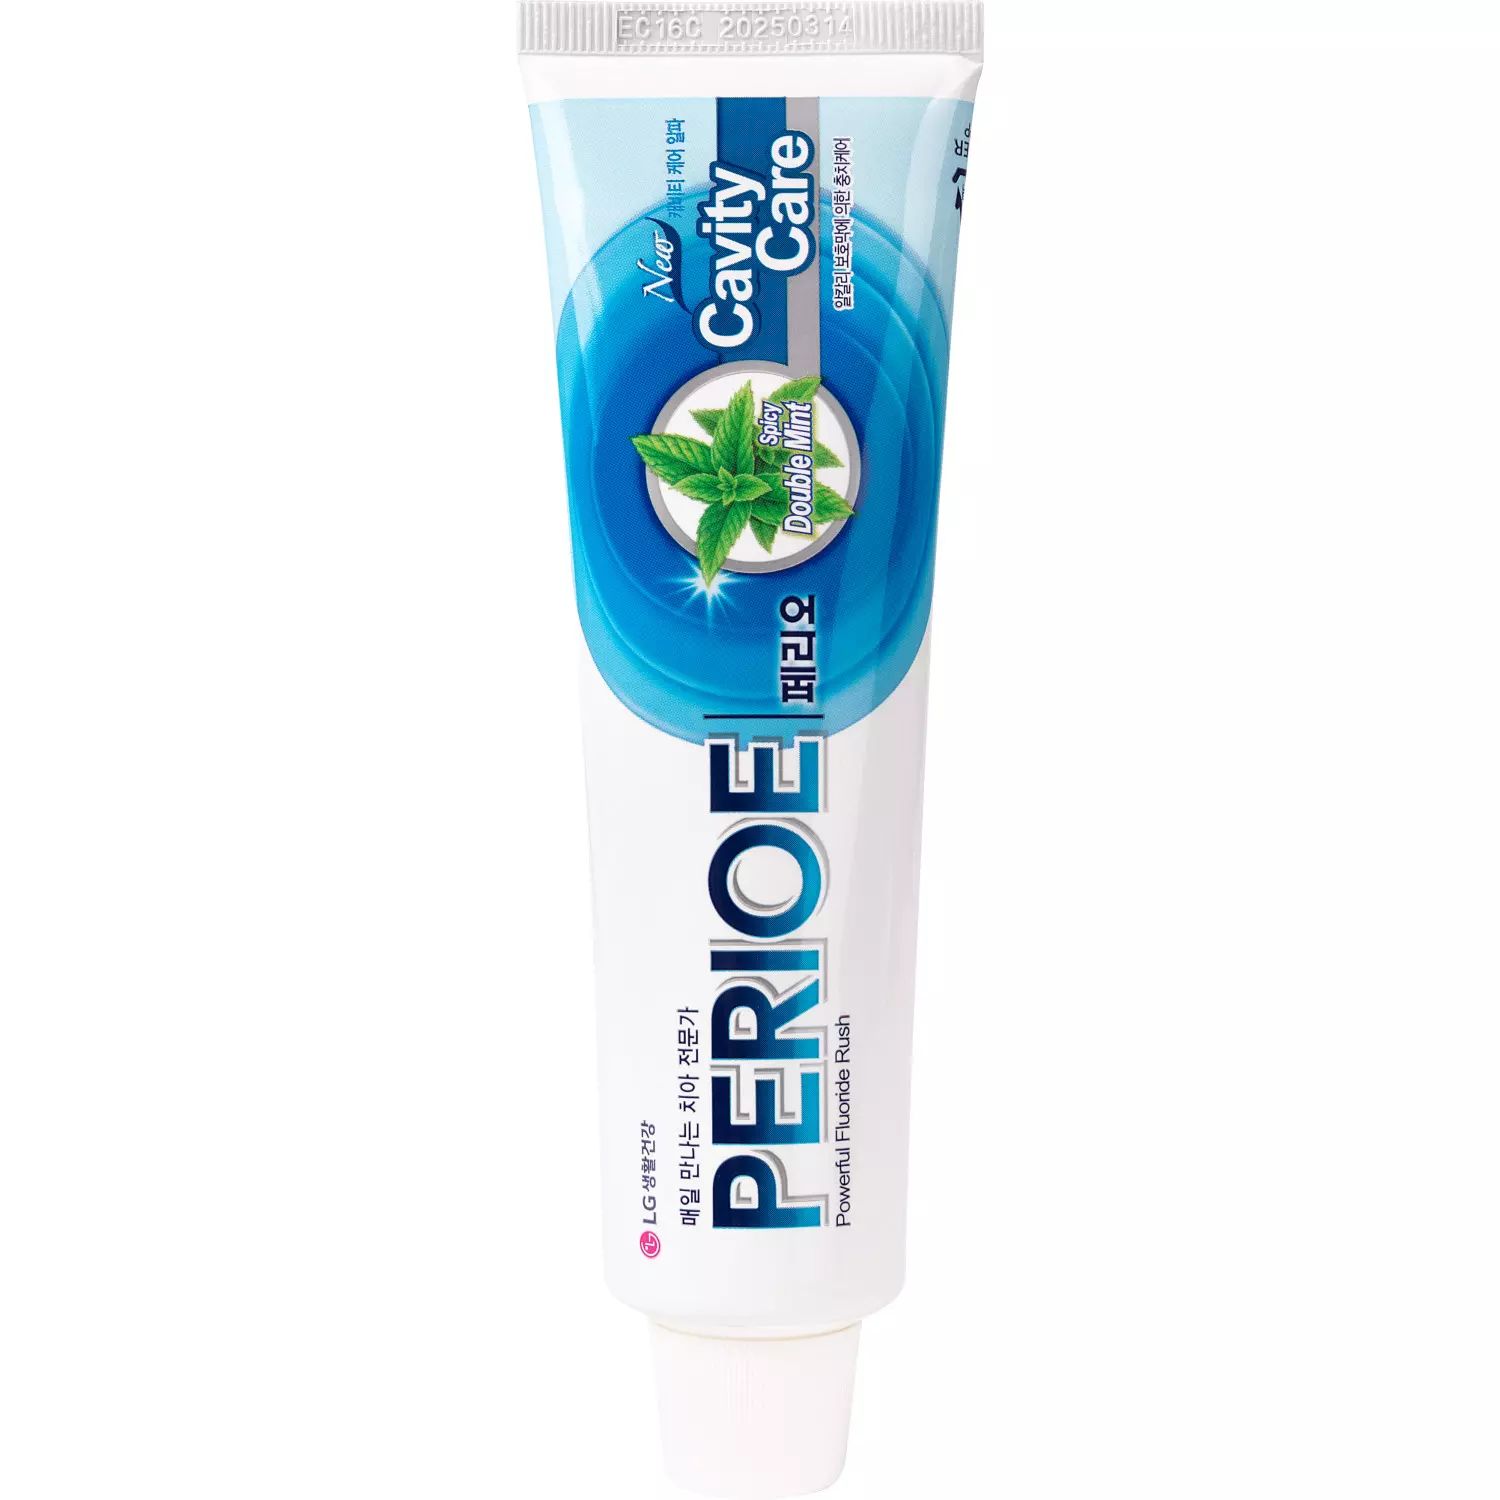 Зубная паста PERIOE CAVITY CARE ALPHA для эффективной профилактики кариеса 160 г зубная паста perioe breath care alpha освежающая дыхание 100 г 2 шт